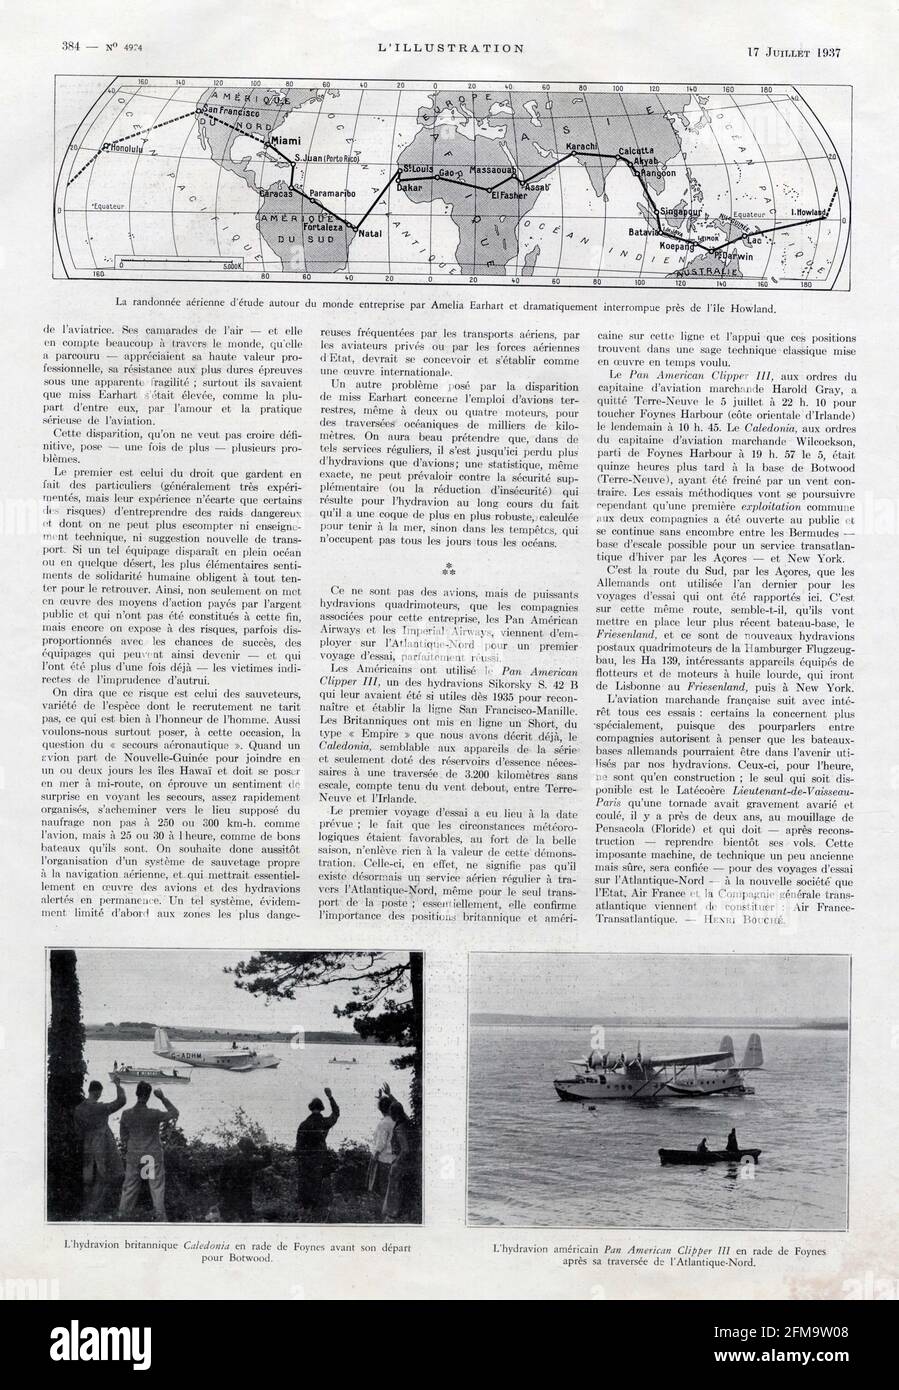 La randonnée aérienne d'étude autour du Monde entreprise par Amelia Earhart et dramatiquement interrompue près de l'île Howland Stockfoto